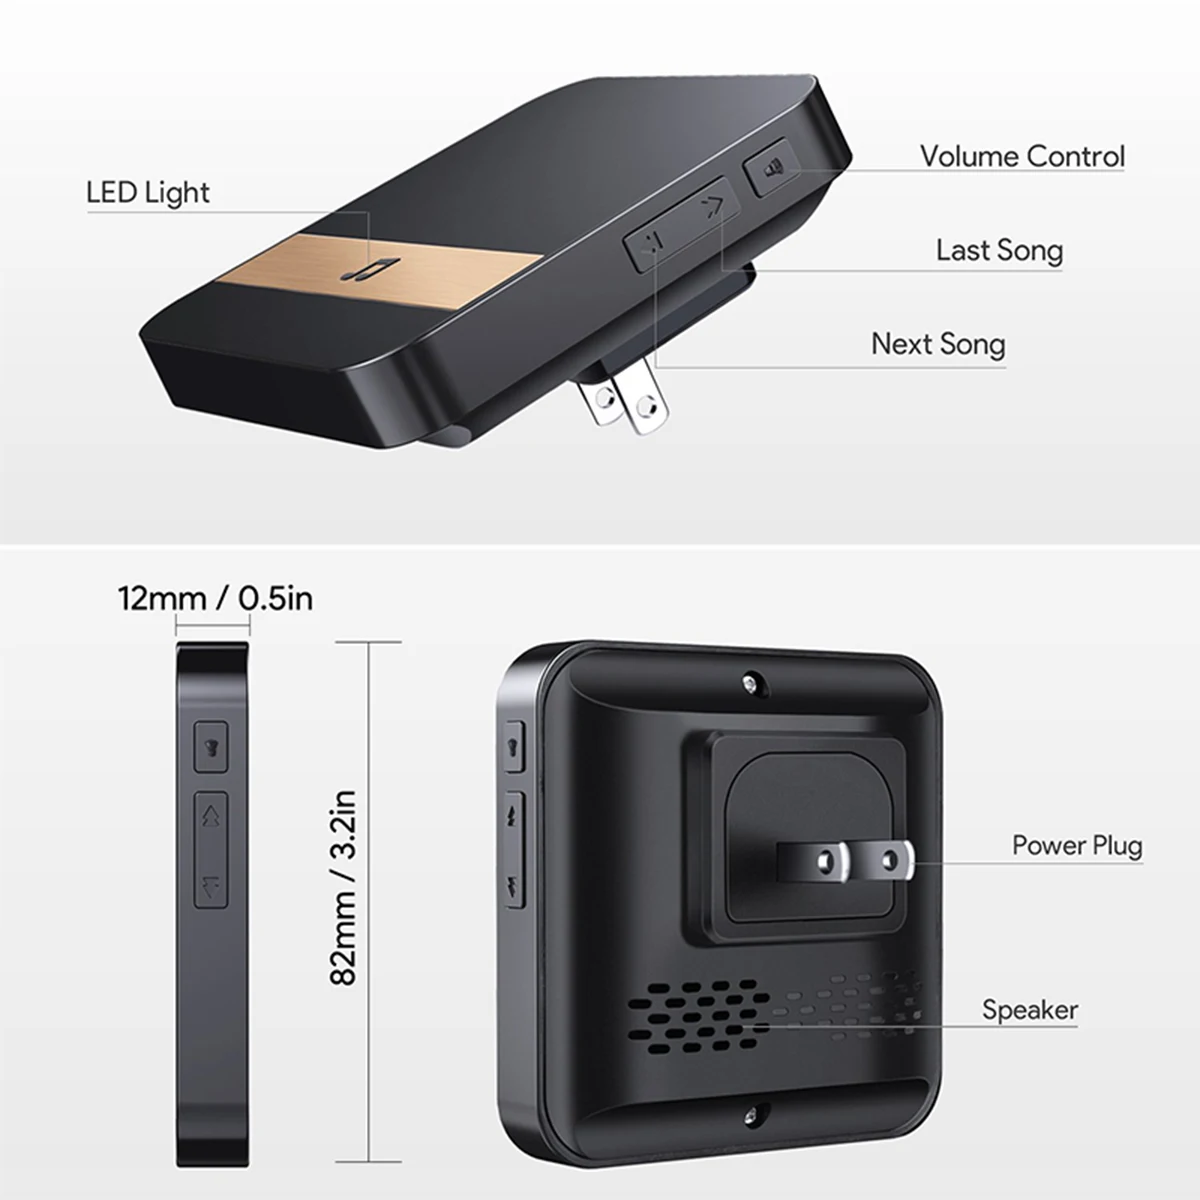 HD 720P умный wifi дверной звонок беспроводной домофон дверной звонок с камерой Обнаружение движения ночное видение видео Водонепроницаемый дверной звонок M12